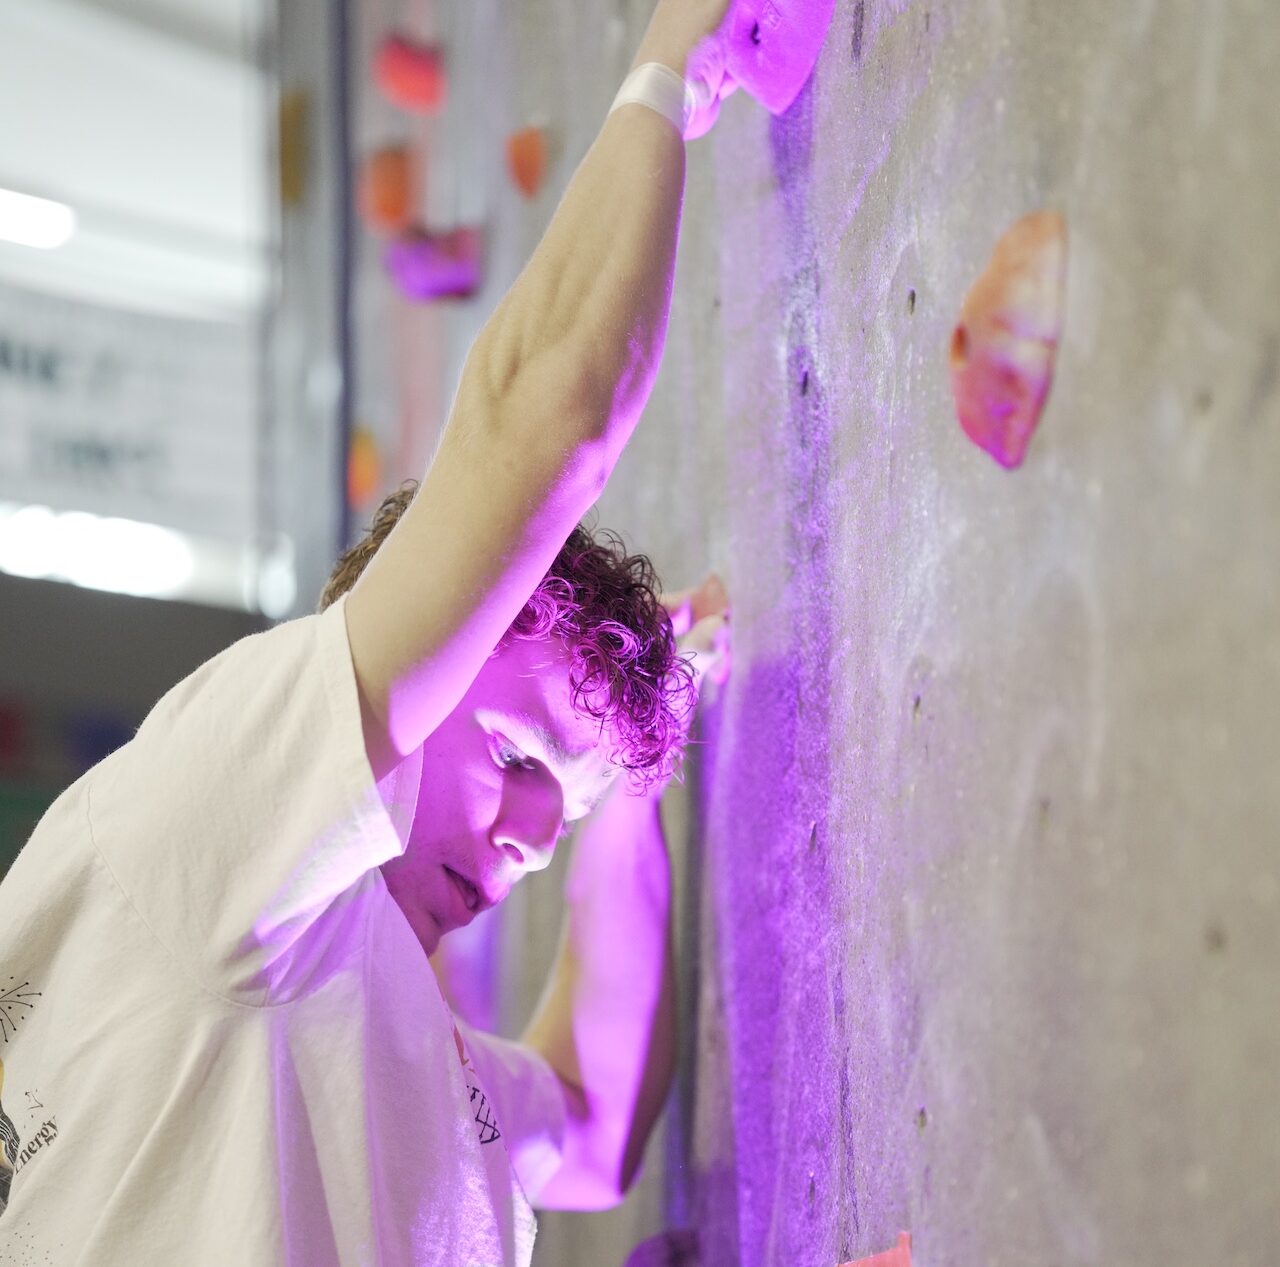 Student climbing the Kaplan Center climbing wall class=img-responsive